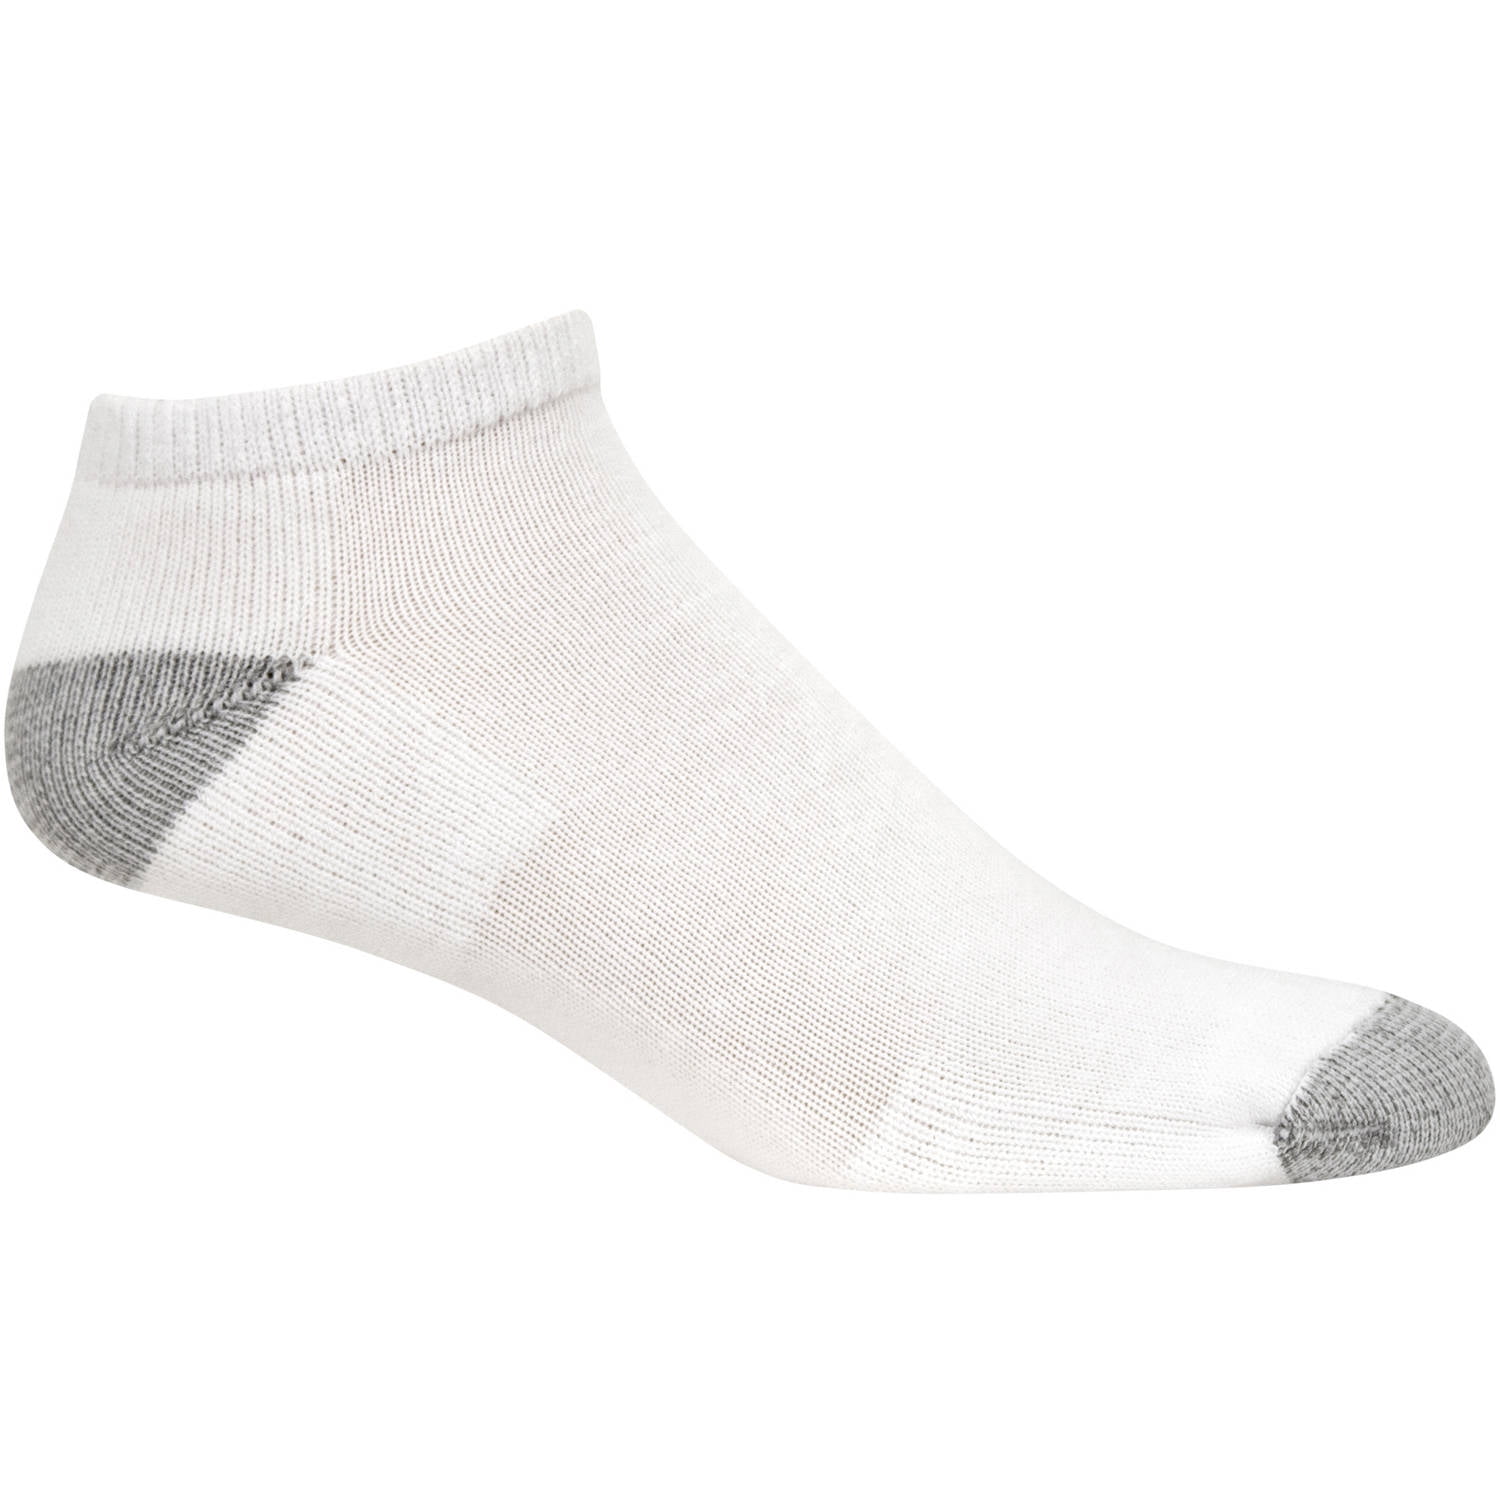 Low-Cut USA Socks 6-Pack - Walmart.com